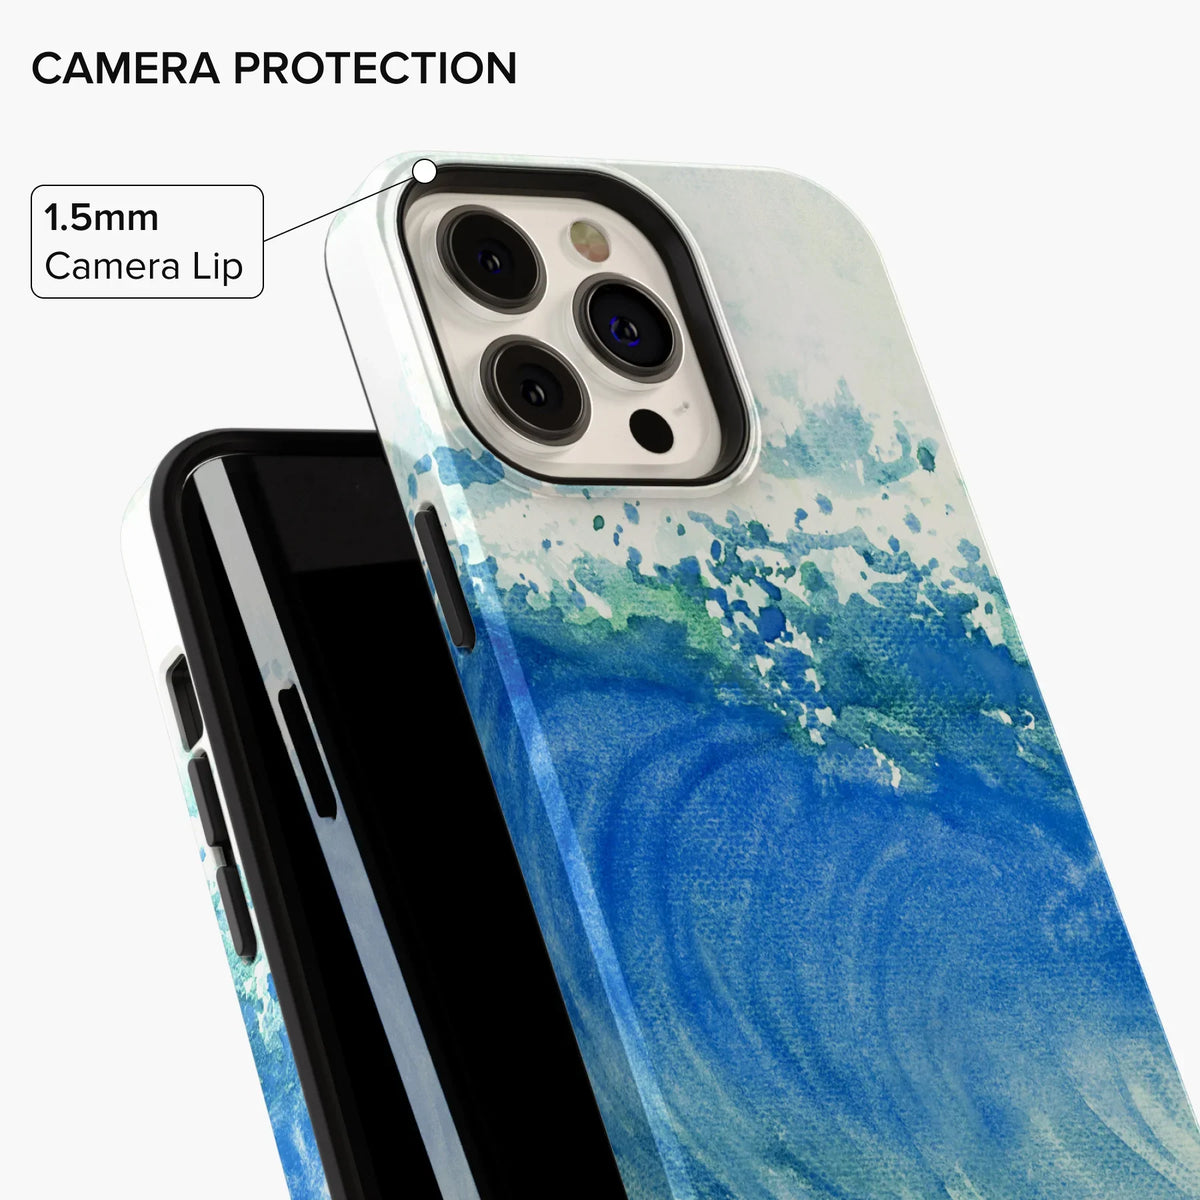 Oceanic Euphoria iPhone Case - iPhone 11 Pro Max